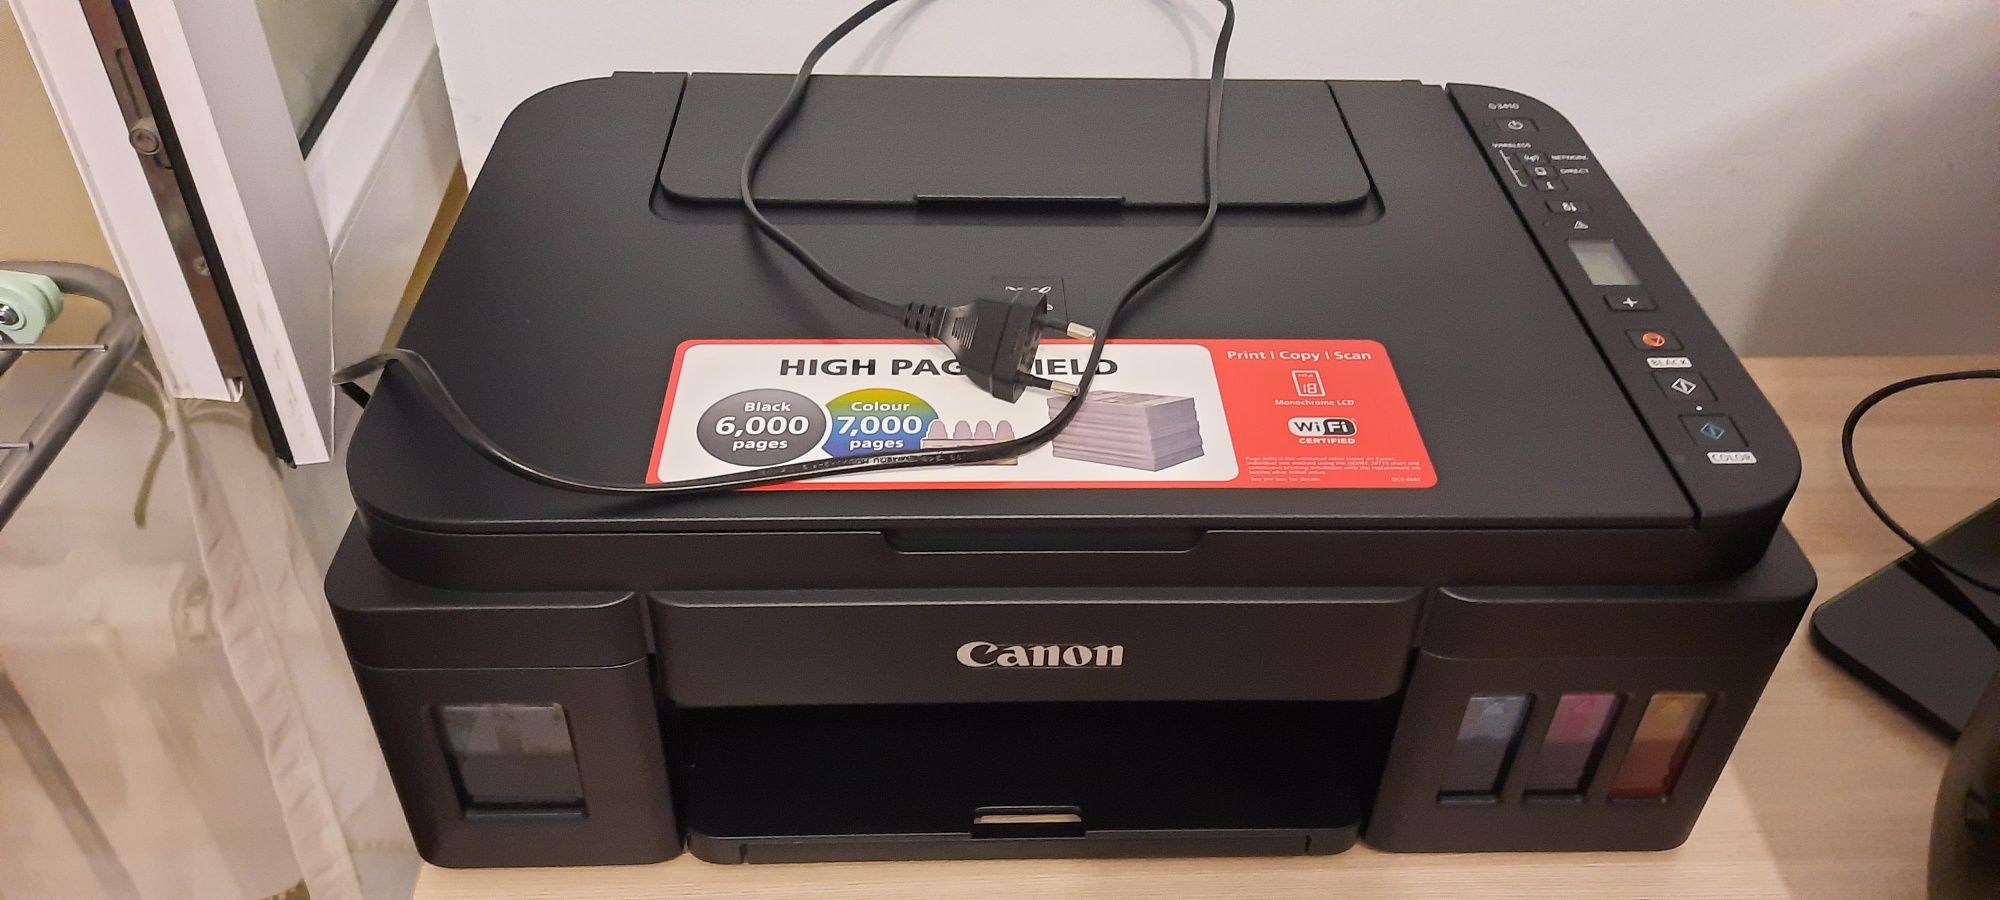 Принтер G3410 CANON